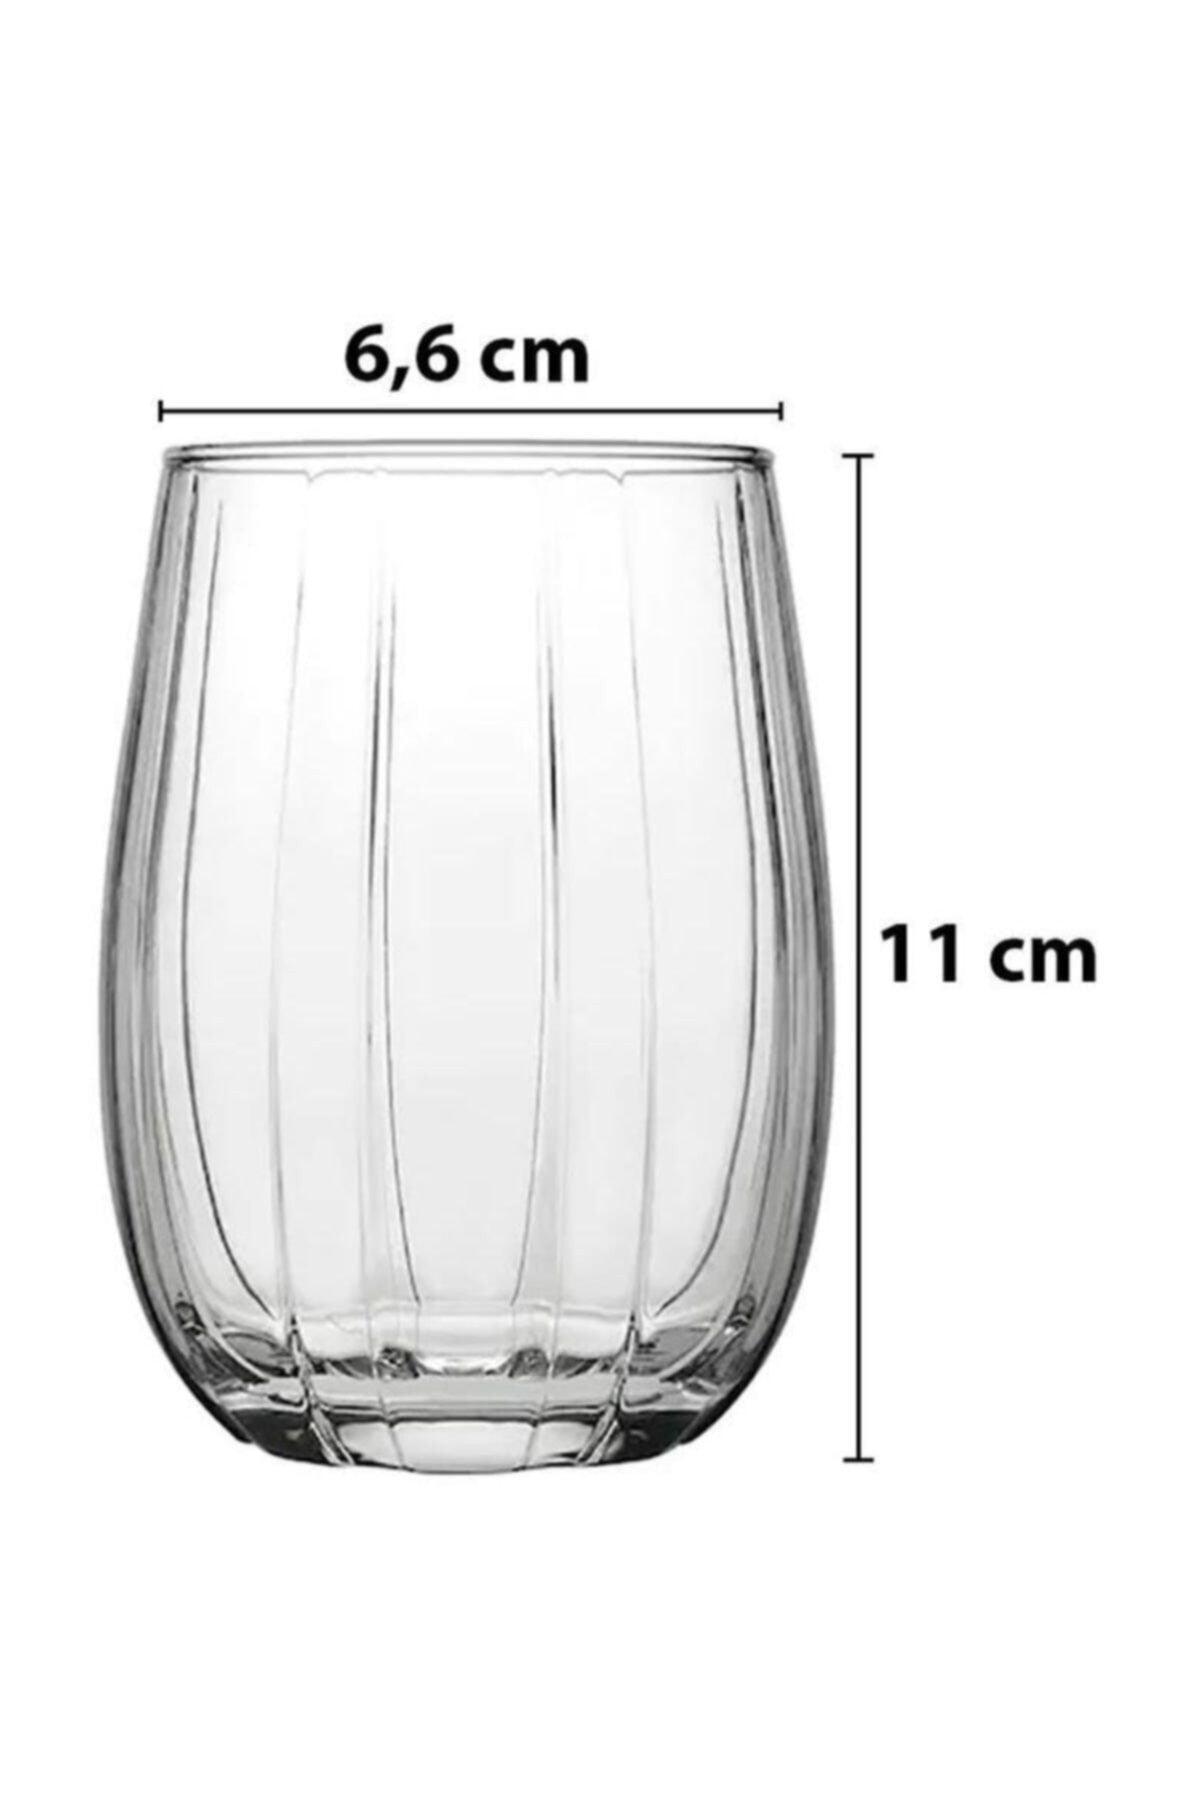 Elysee Water Glass 190 ml Standard